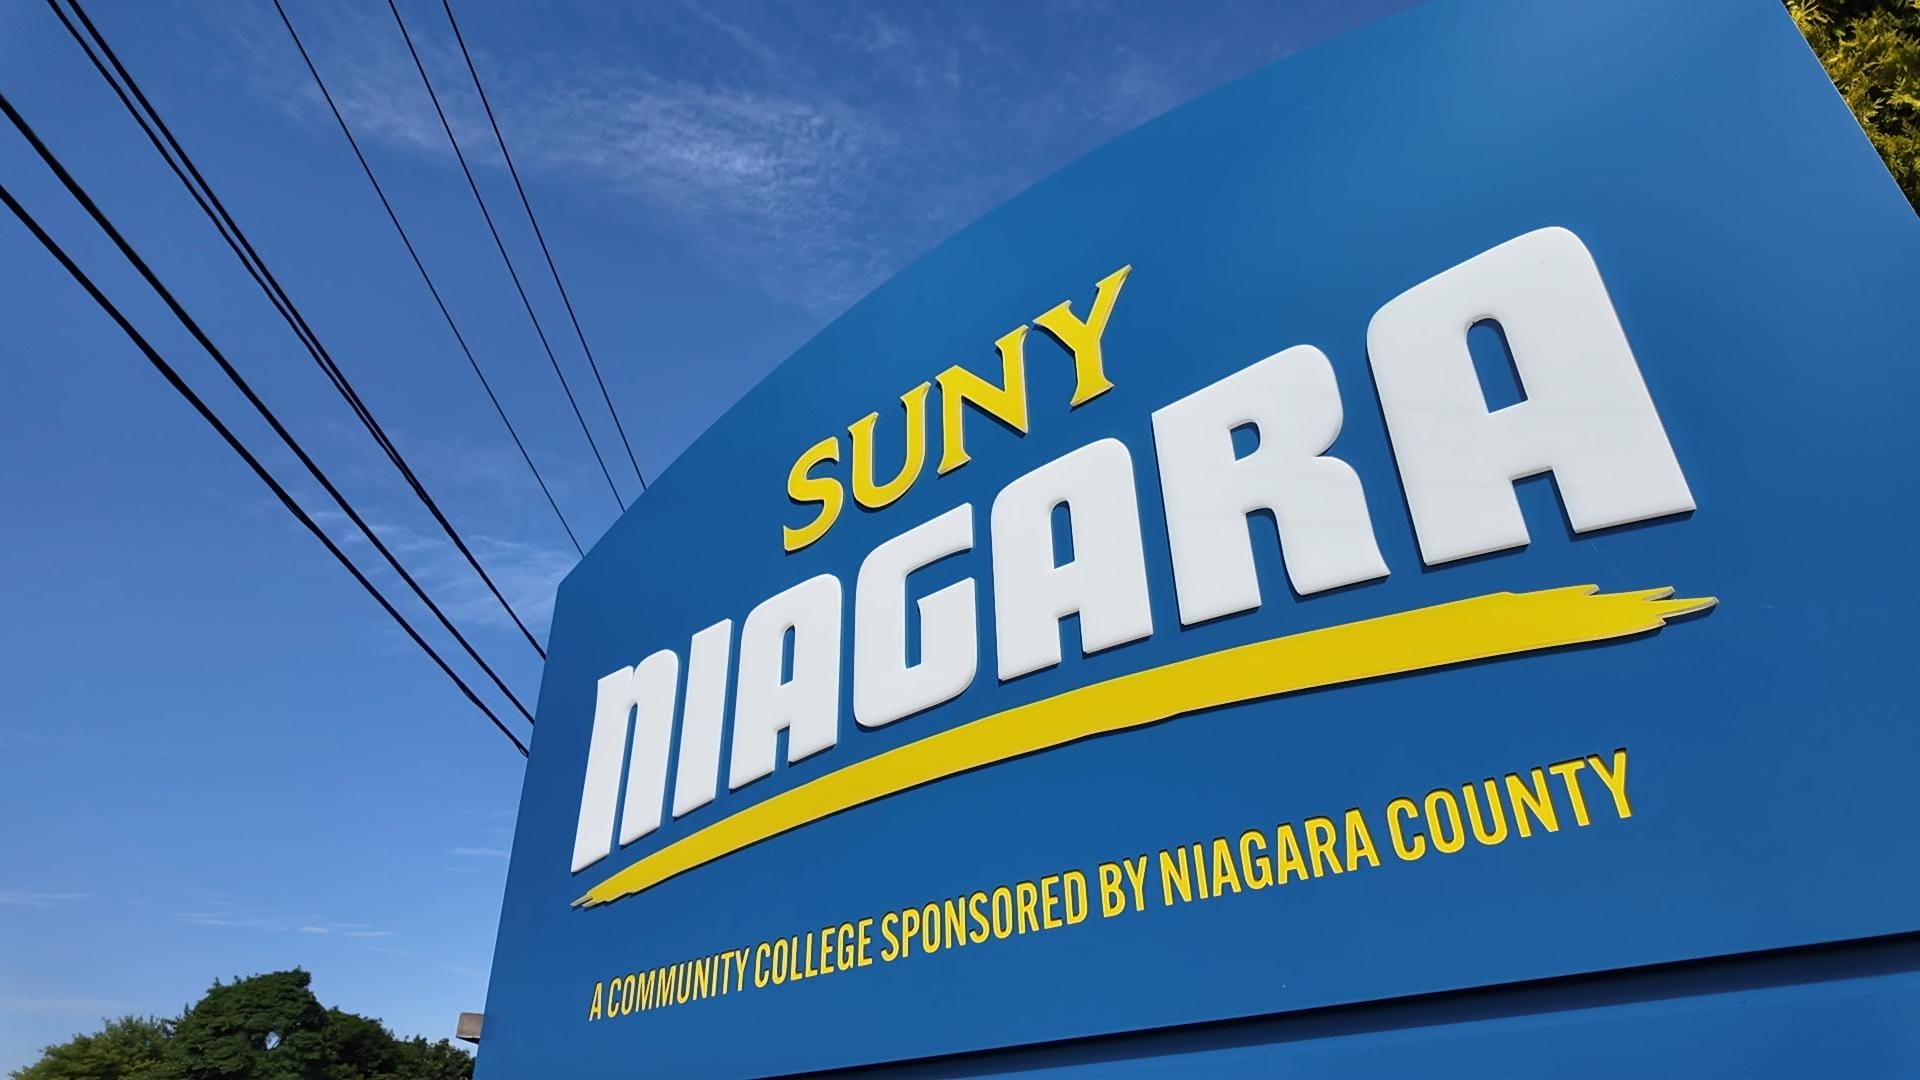 Image of SUNY Niagara billboard